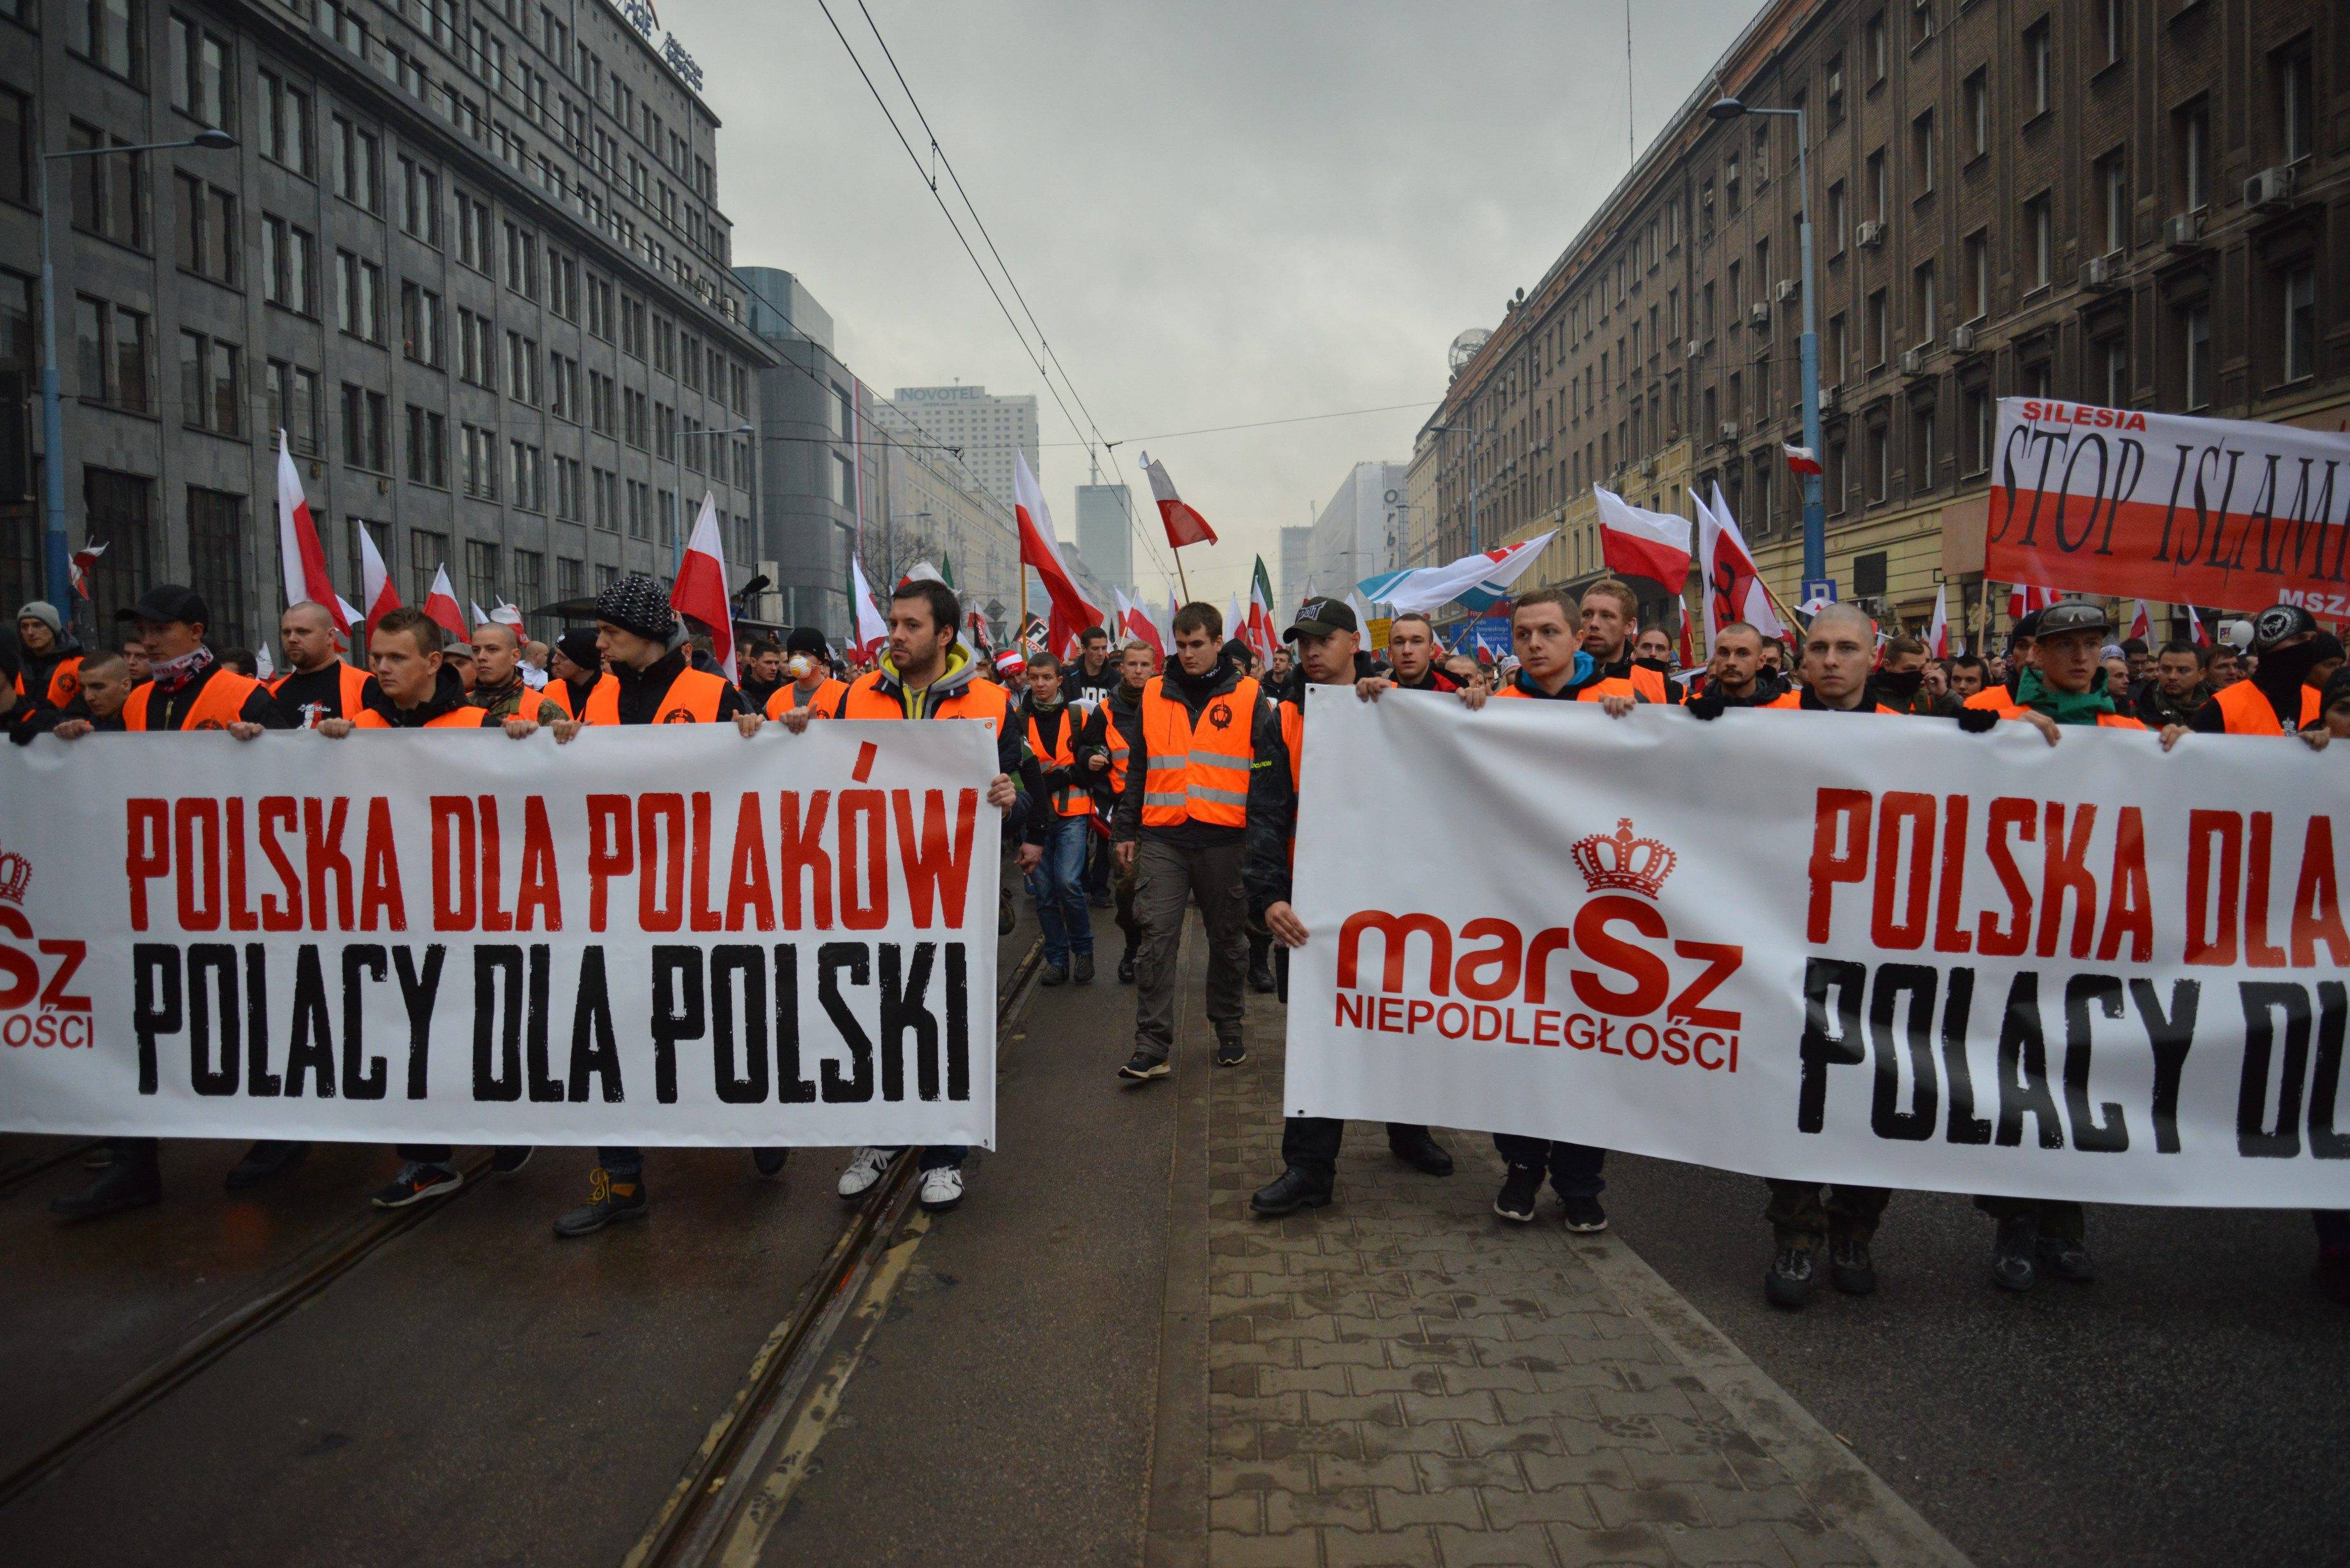 narodowcy maszerują z transparentami "Polska dla Polaków"